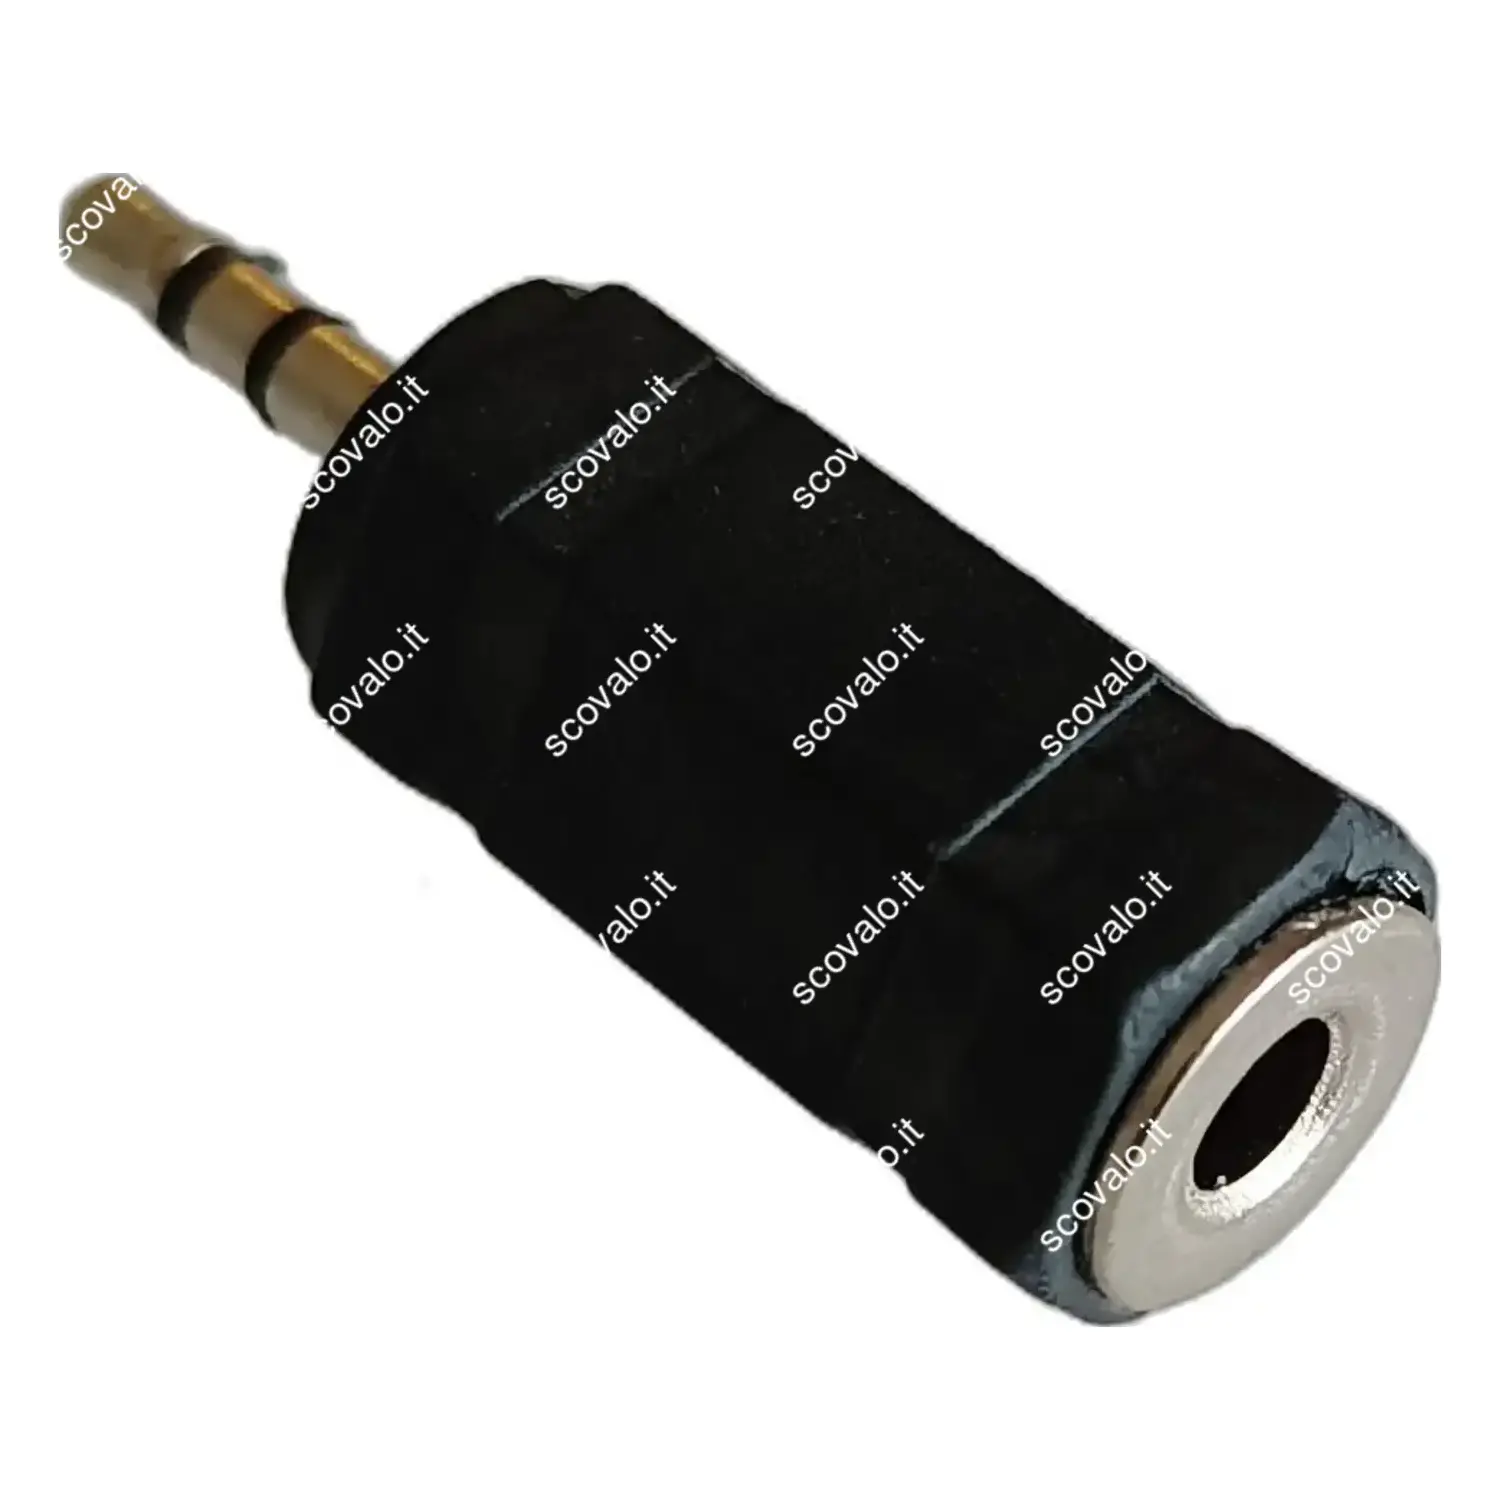 immagine adattatore cuffie jack aux da 2.5 mm a presa stereo 3.5 mm audio